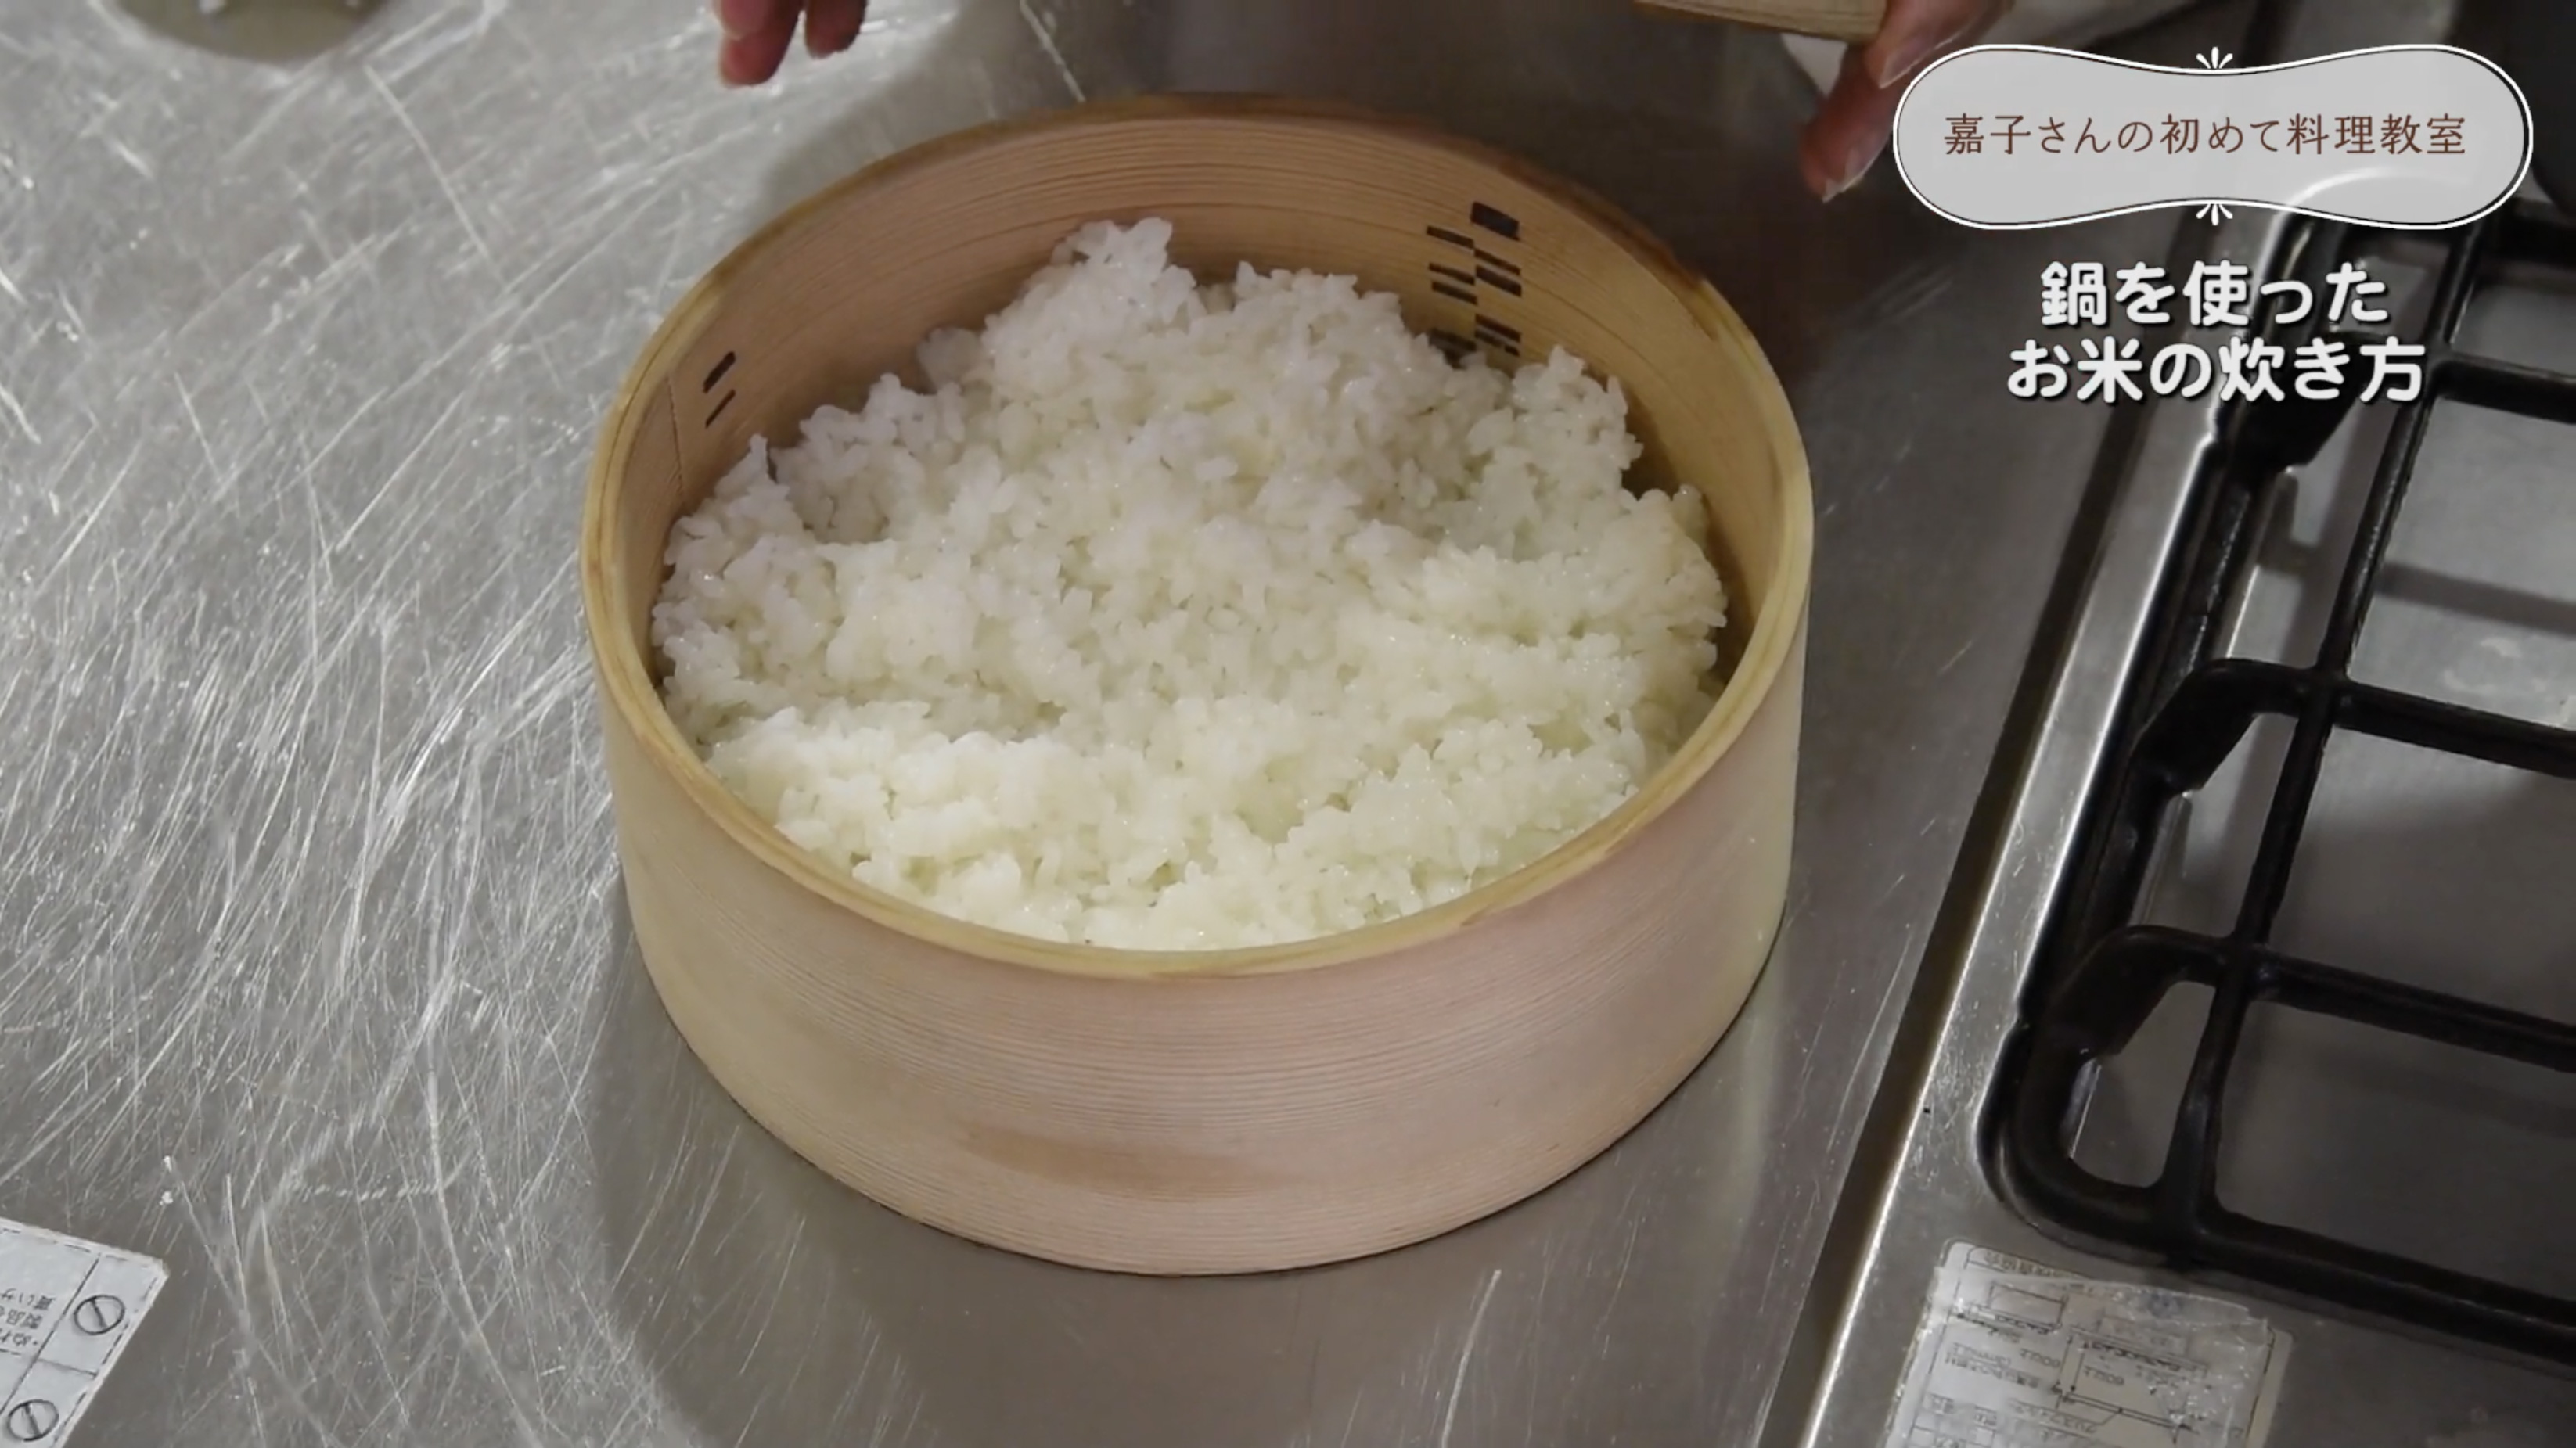 あらためて再確認「鍋を使ったおいしいお米の炊き方」